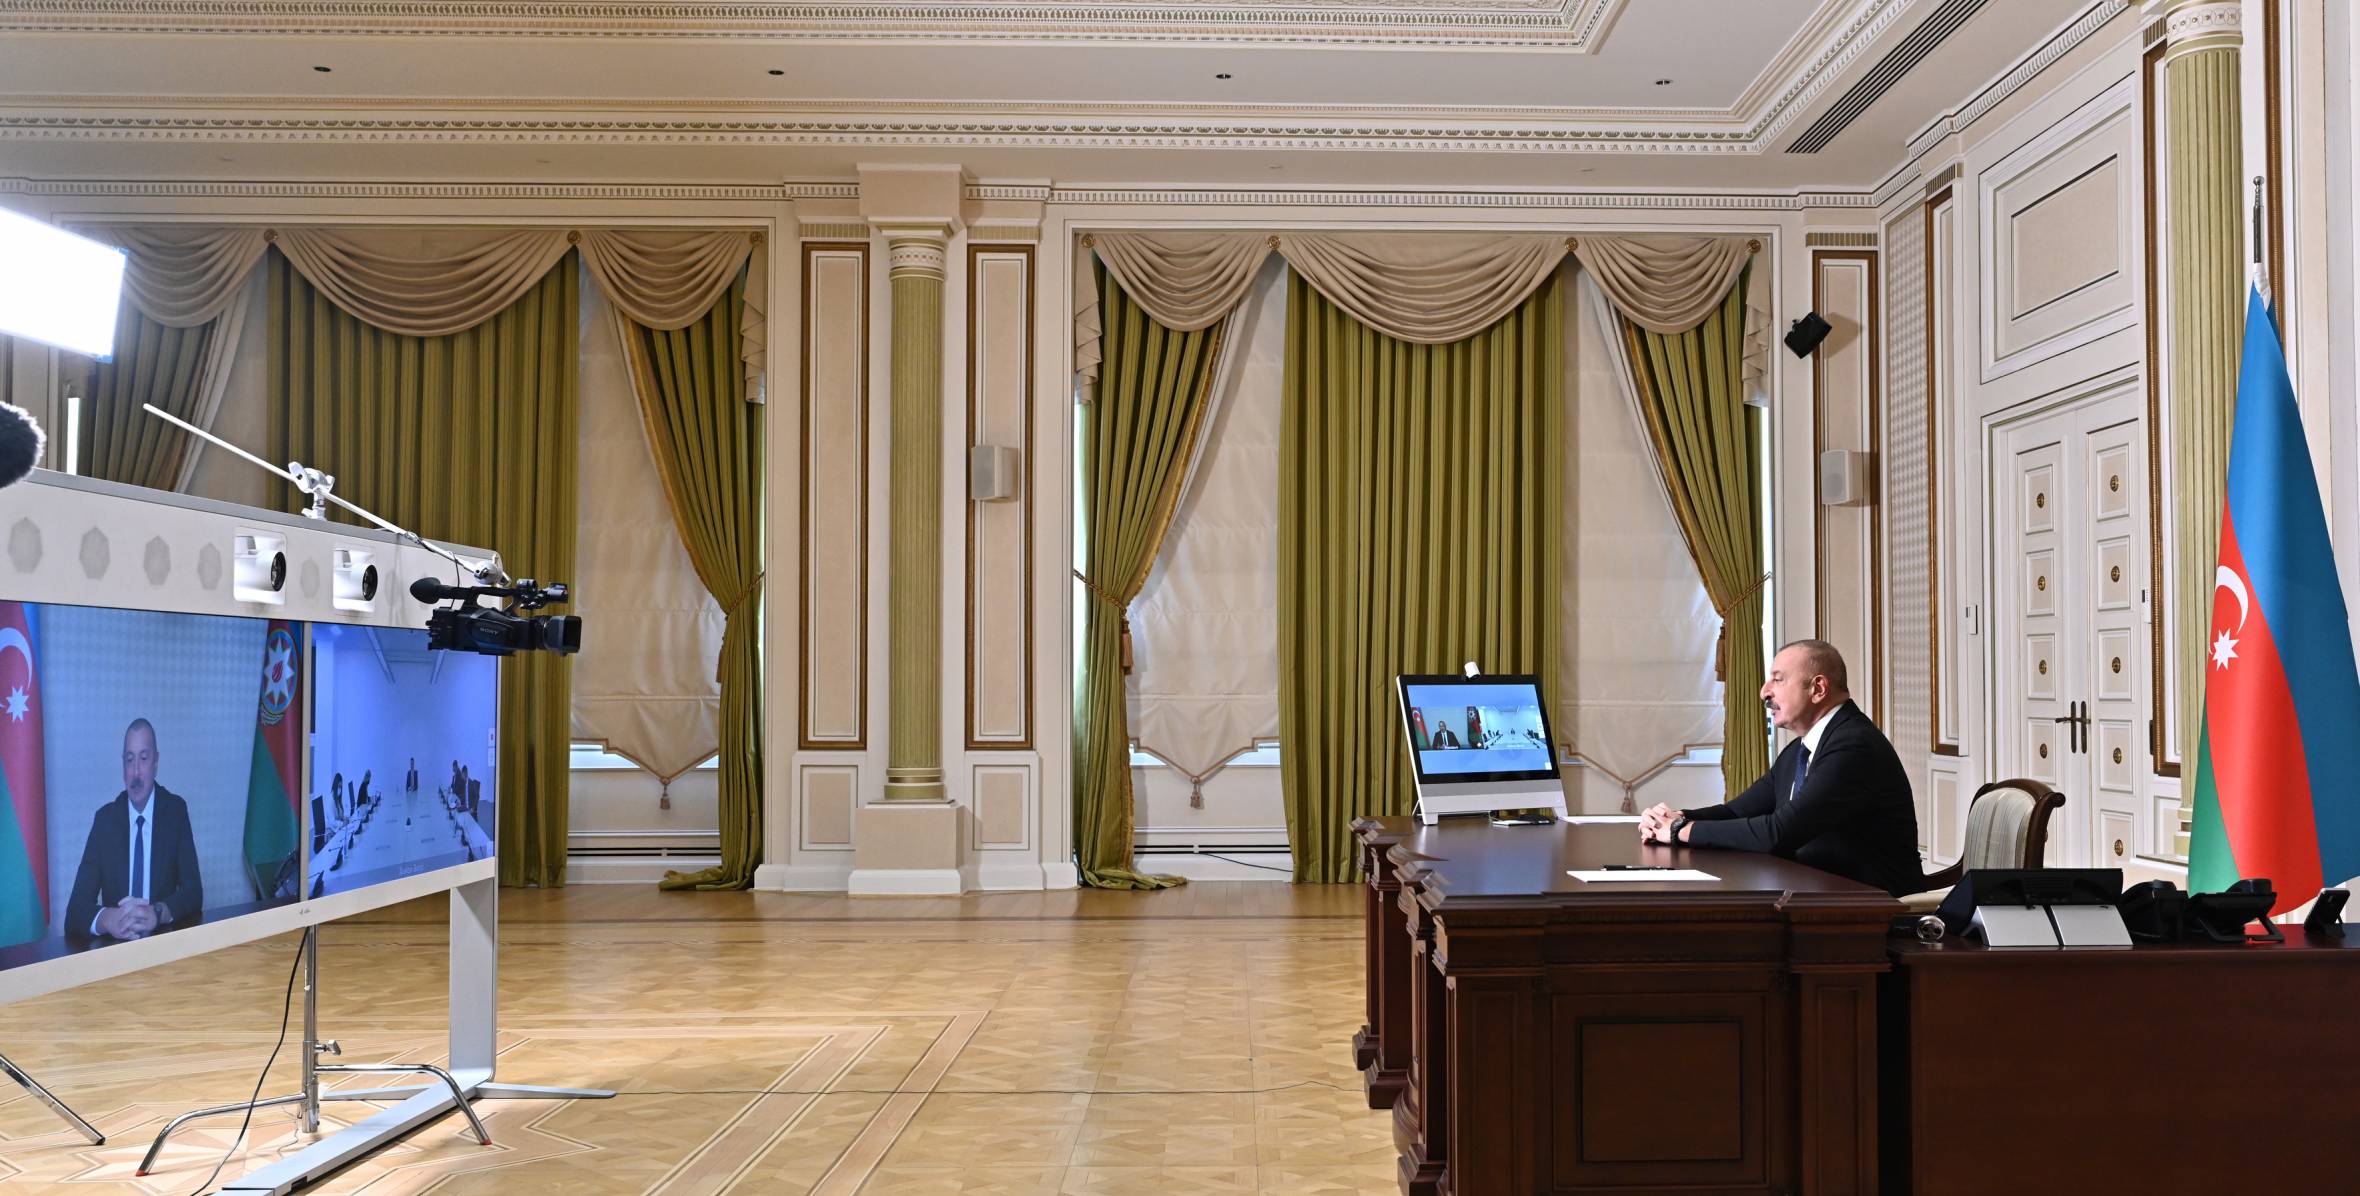 Состоялась встреча между Ильхамом Алиевым и председателем парламента Монтенегро Алексой Бечичем в видеоформате